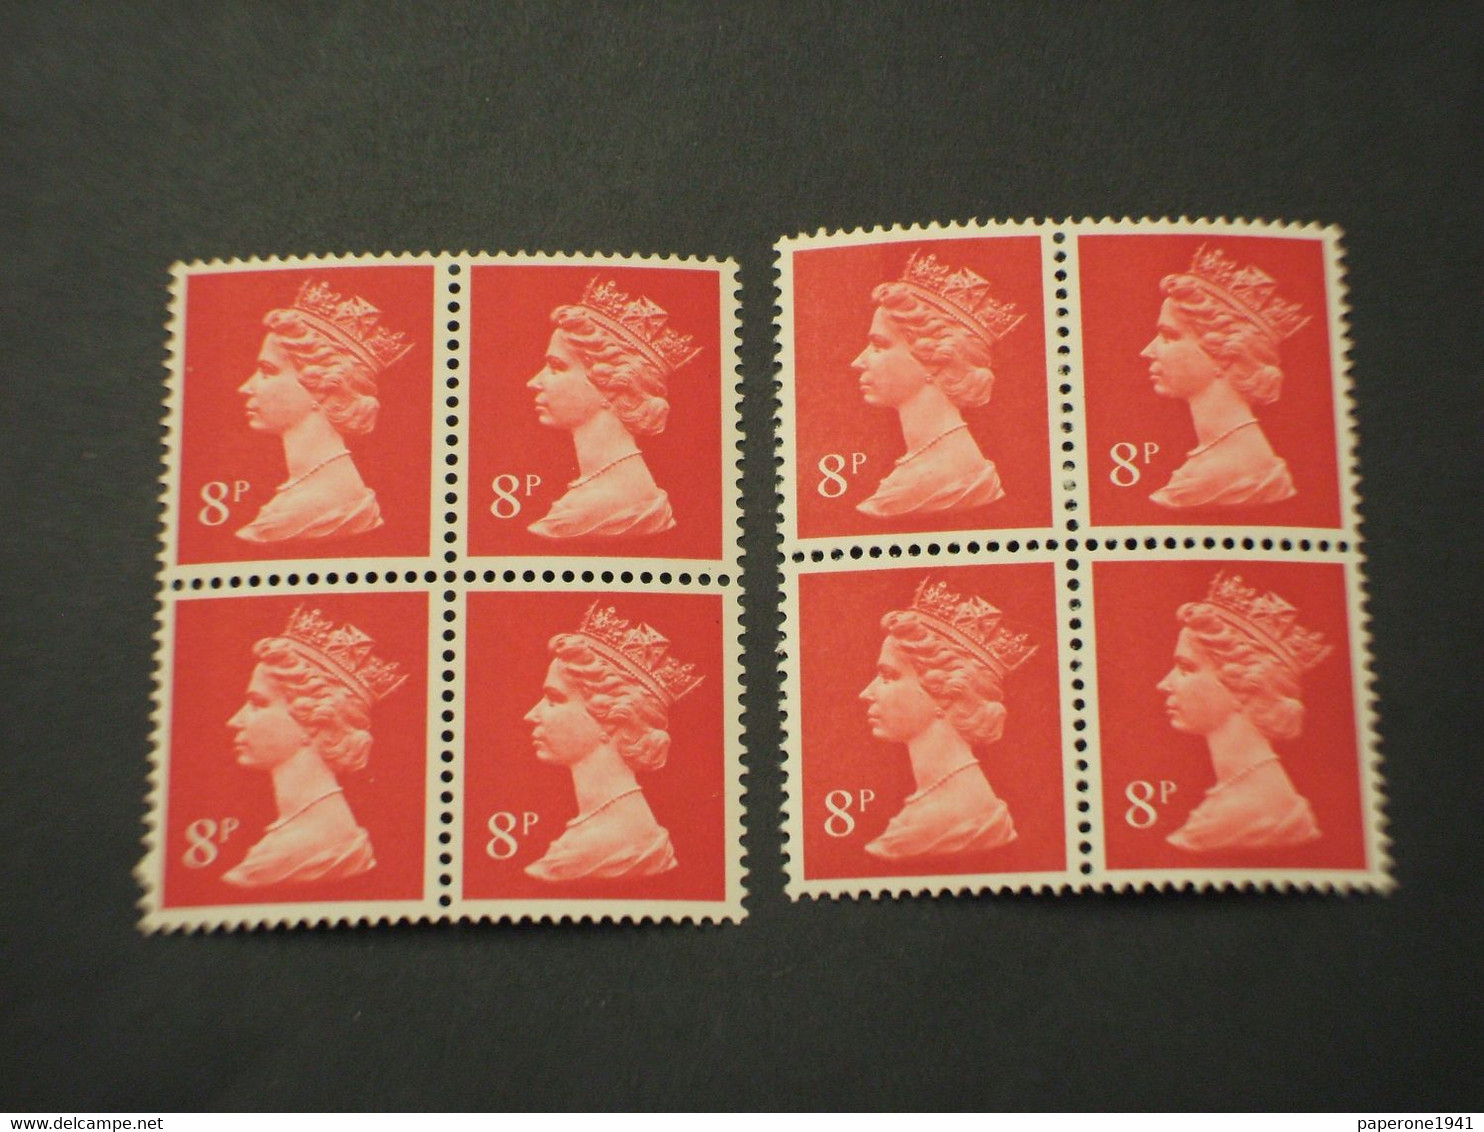 GRAN BRETAGNA - 1973 REGINA  8 P. Banda Centrale-8 P. Due Bande, In Quartine - NUOVO(++) - Unused Stamps